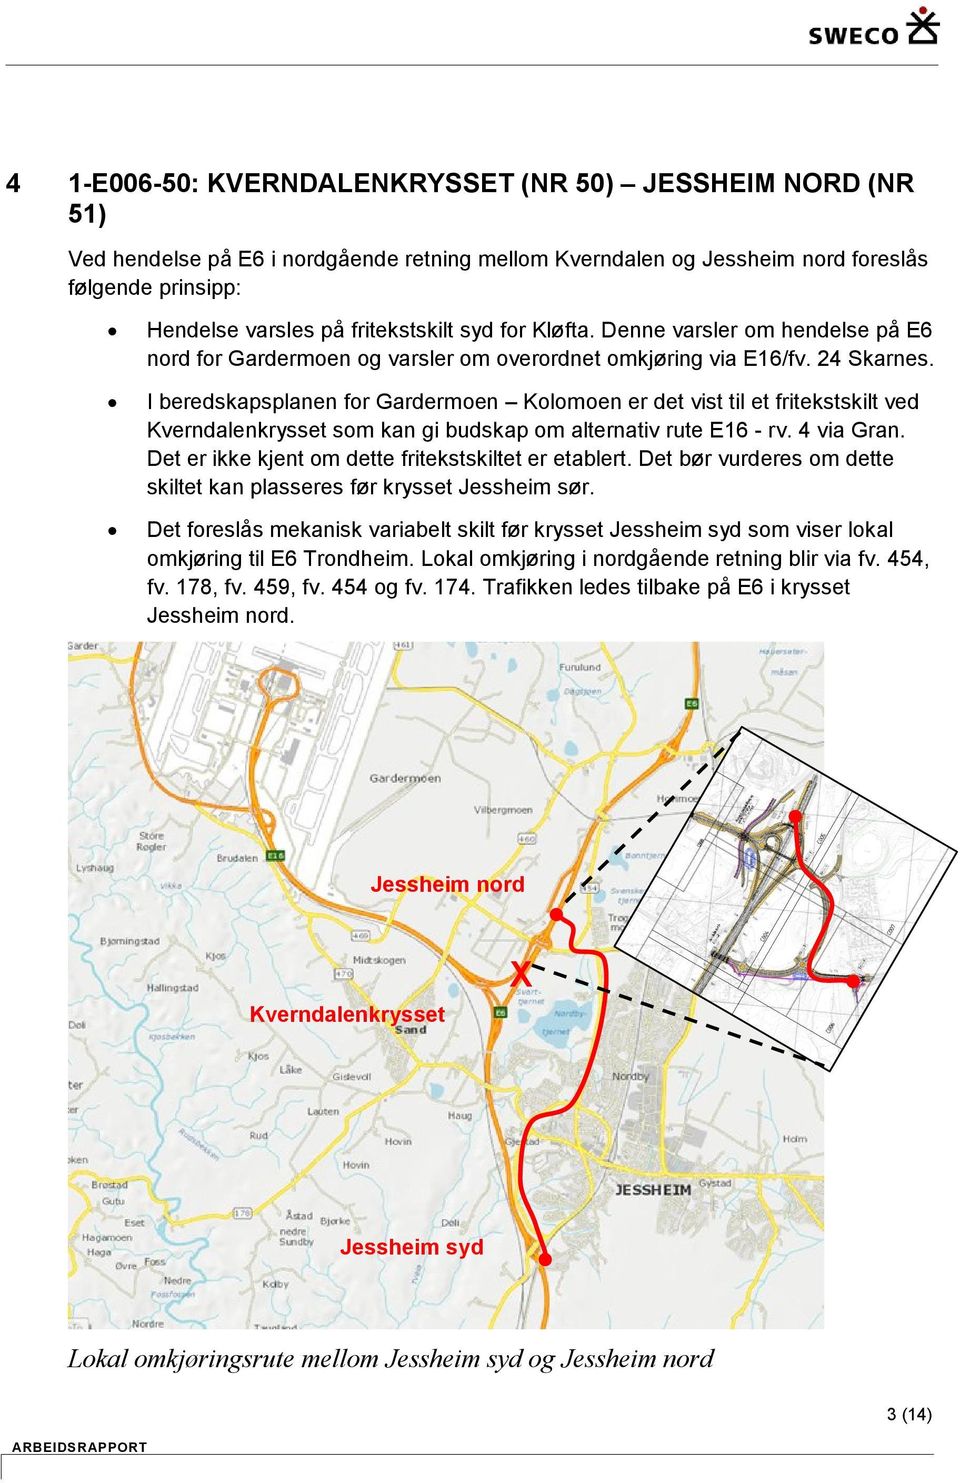 I beredskapsplanen for Gardermoen Kolomoen er det vist til et fritekstskilt ved som kan gi budskap om alternativ rute E16 - rv. 4 via Gran. Det er ikke kjent om dette fritekstskiltet er etablert.